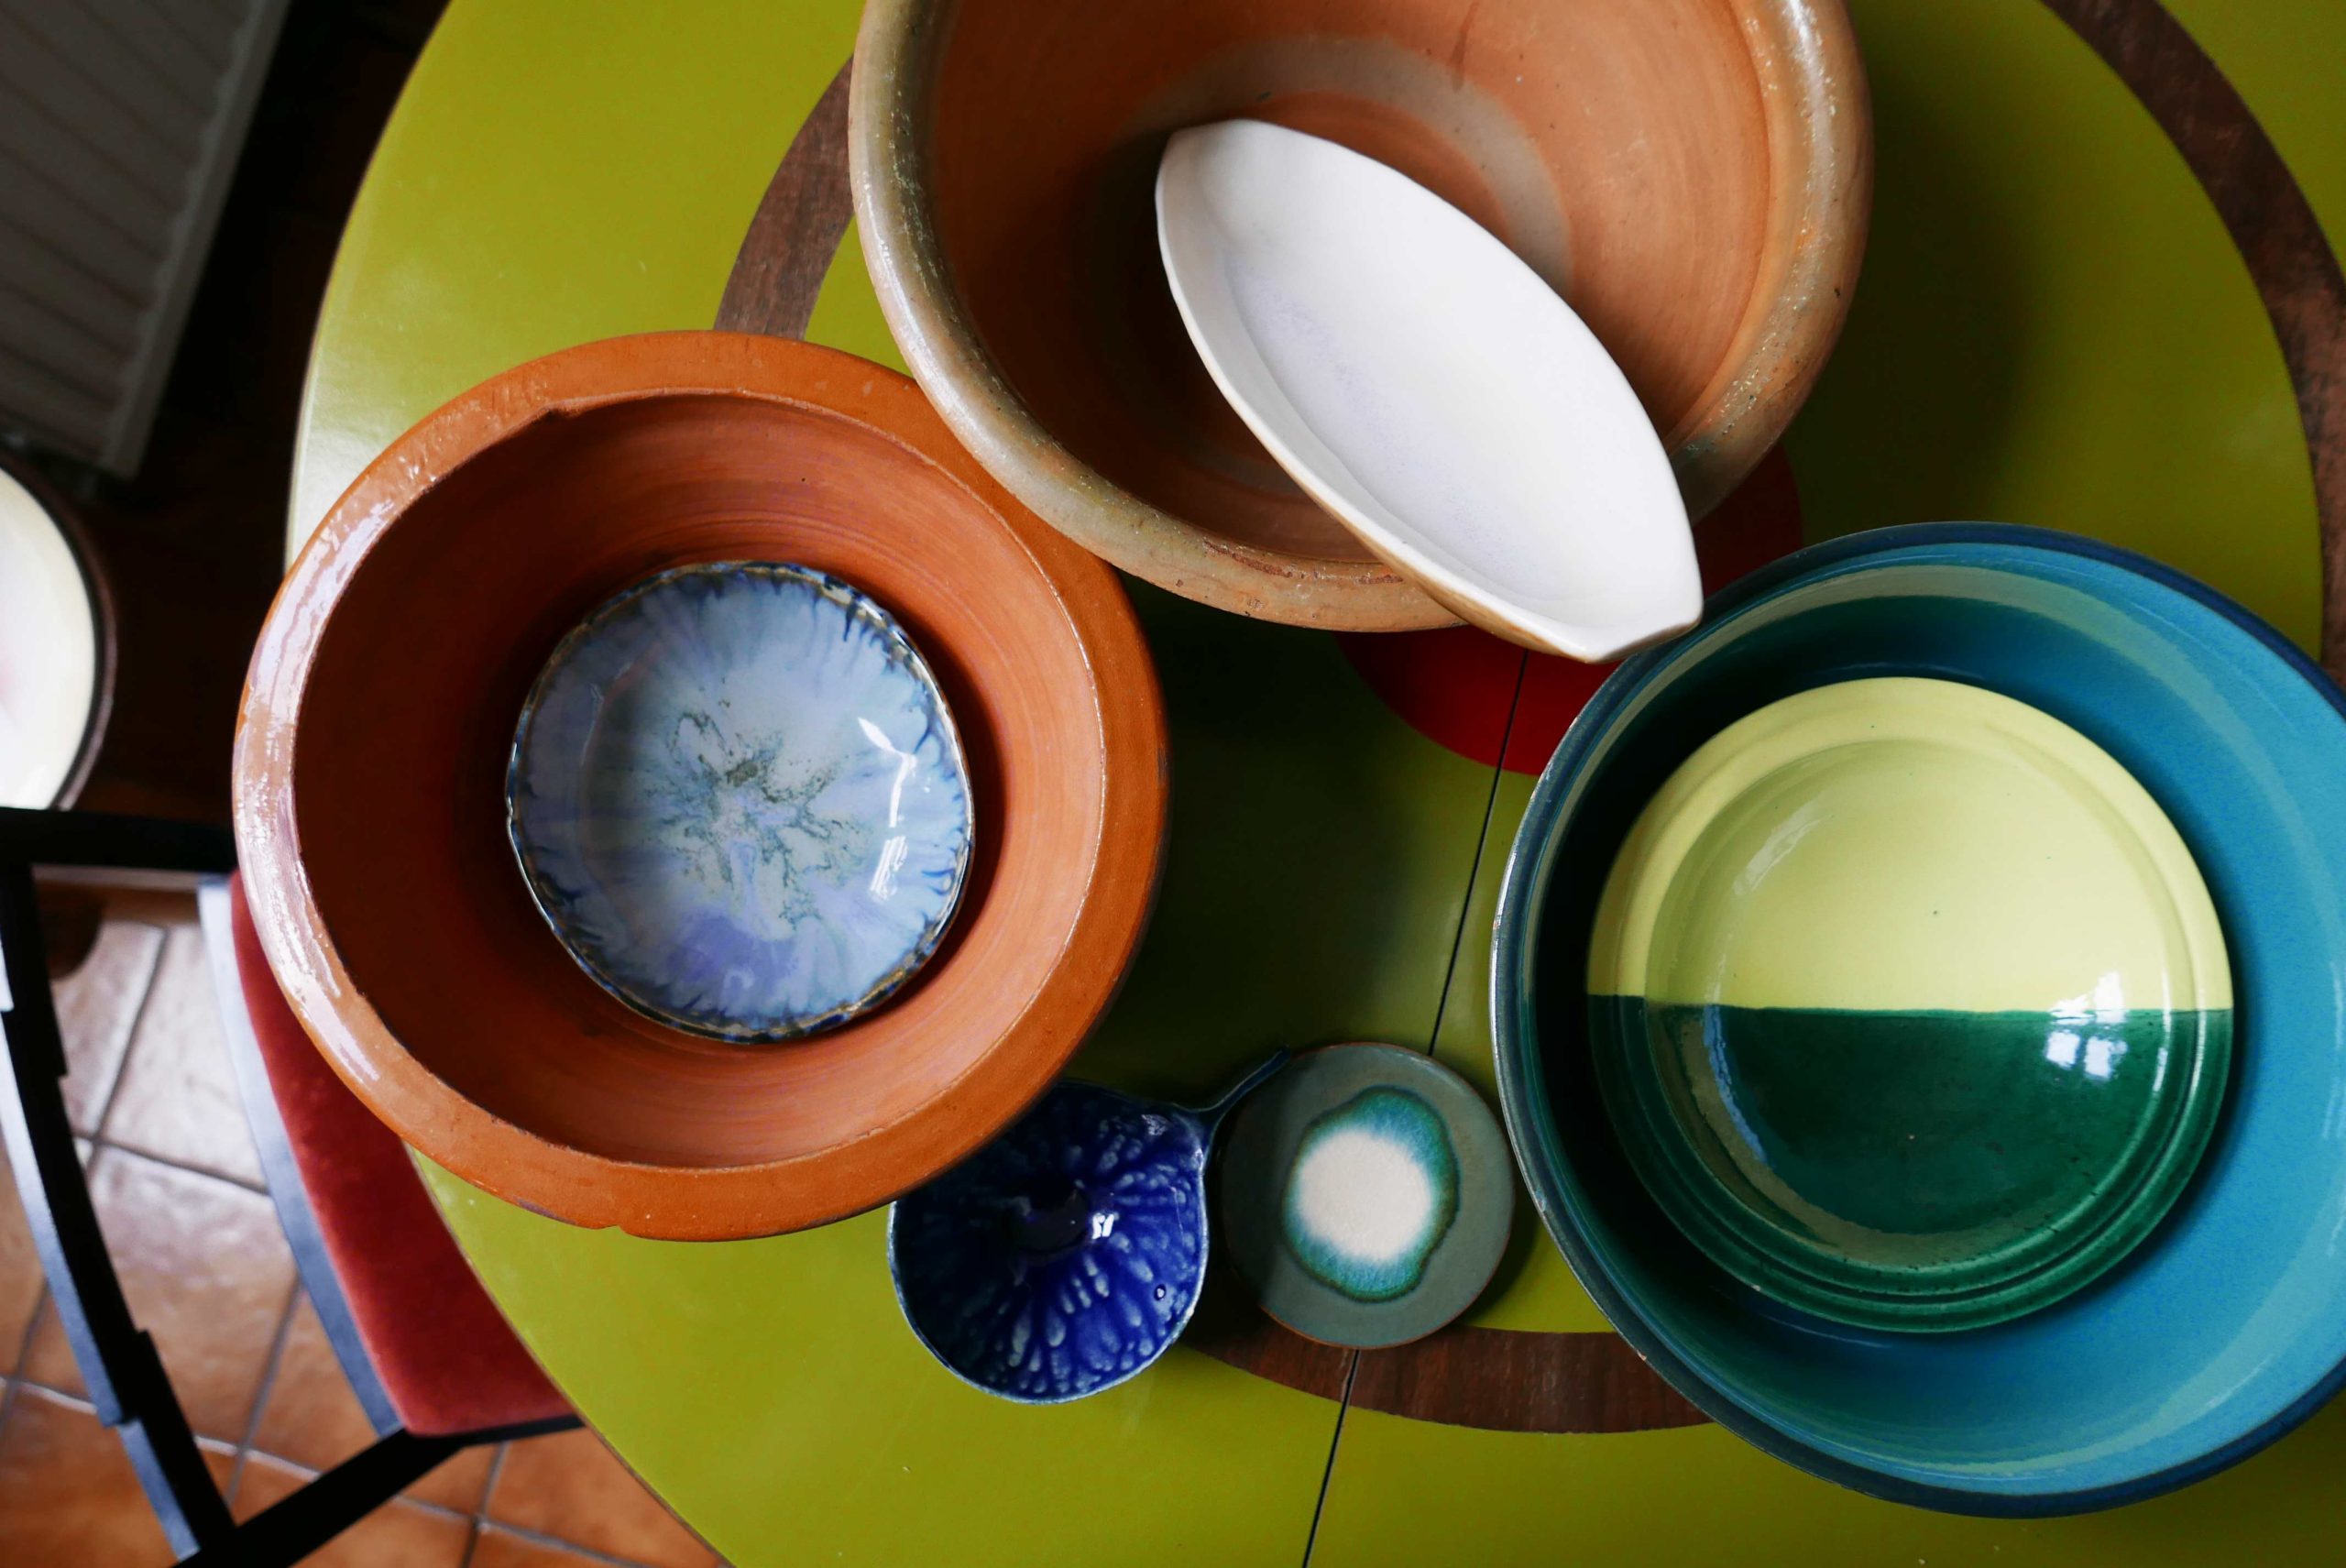 Verschiedene Schalen und Schüsseln aus Keramik auf einem runden Tisch